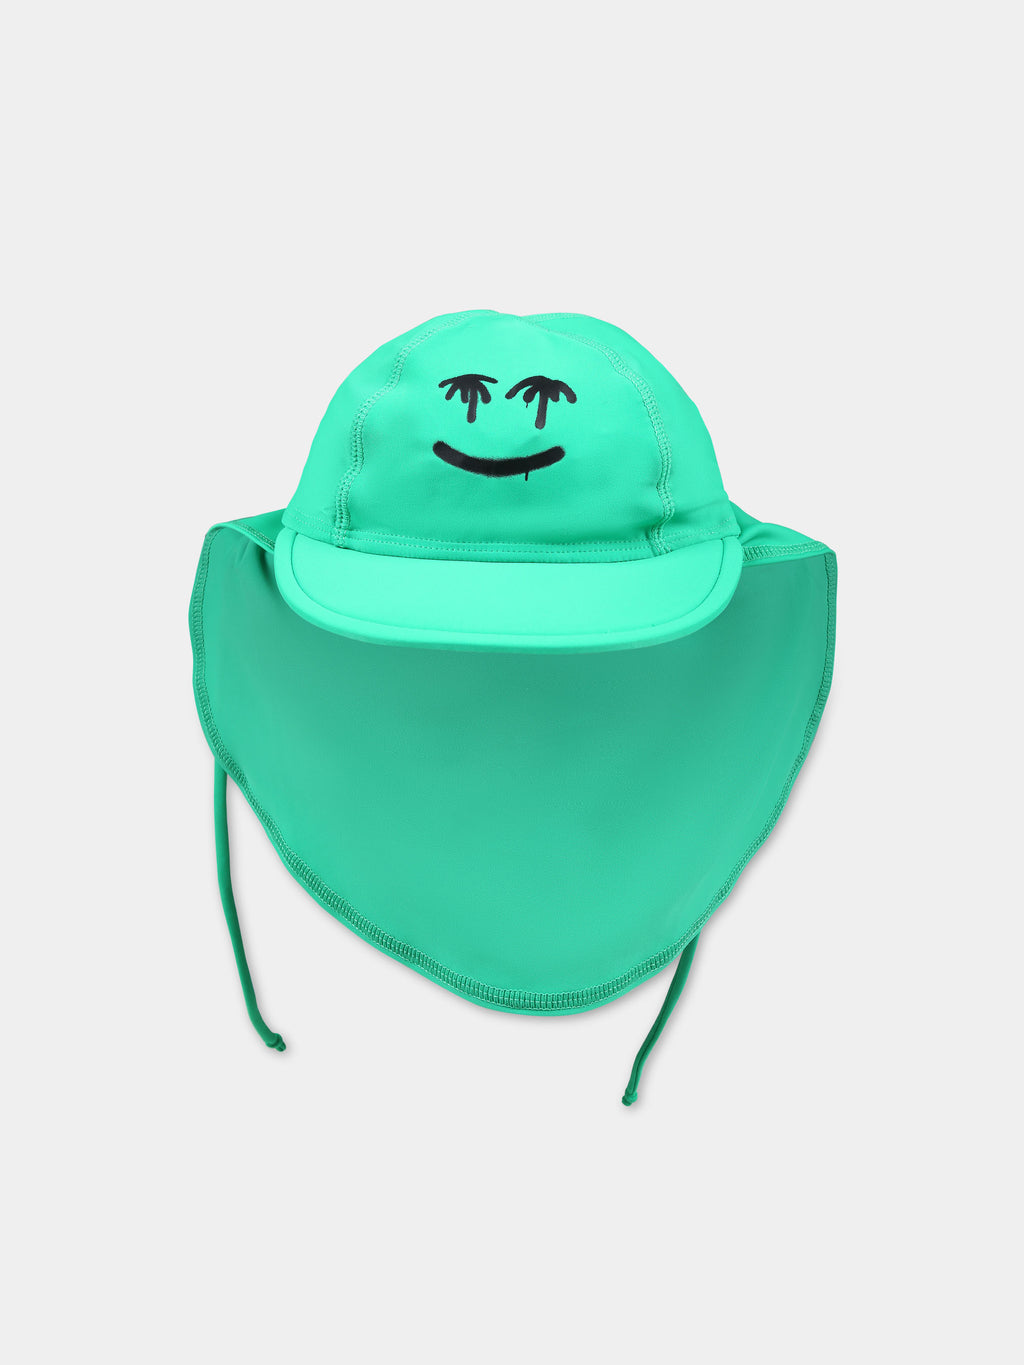 Chapeau vert pour enfants avec smiley